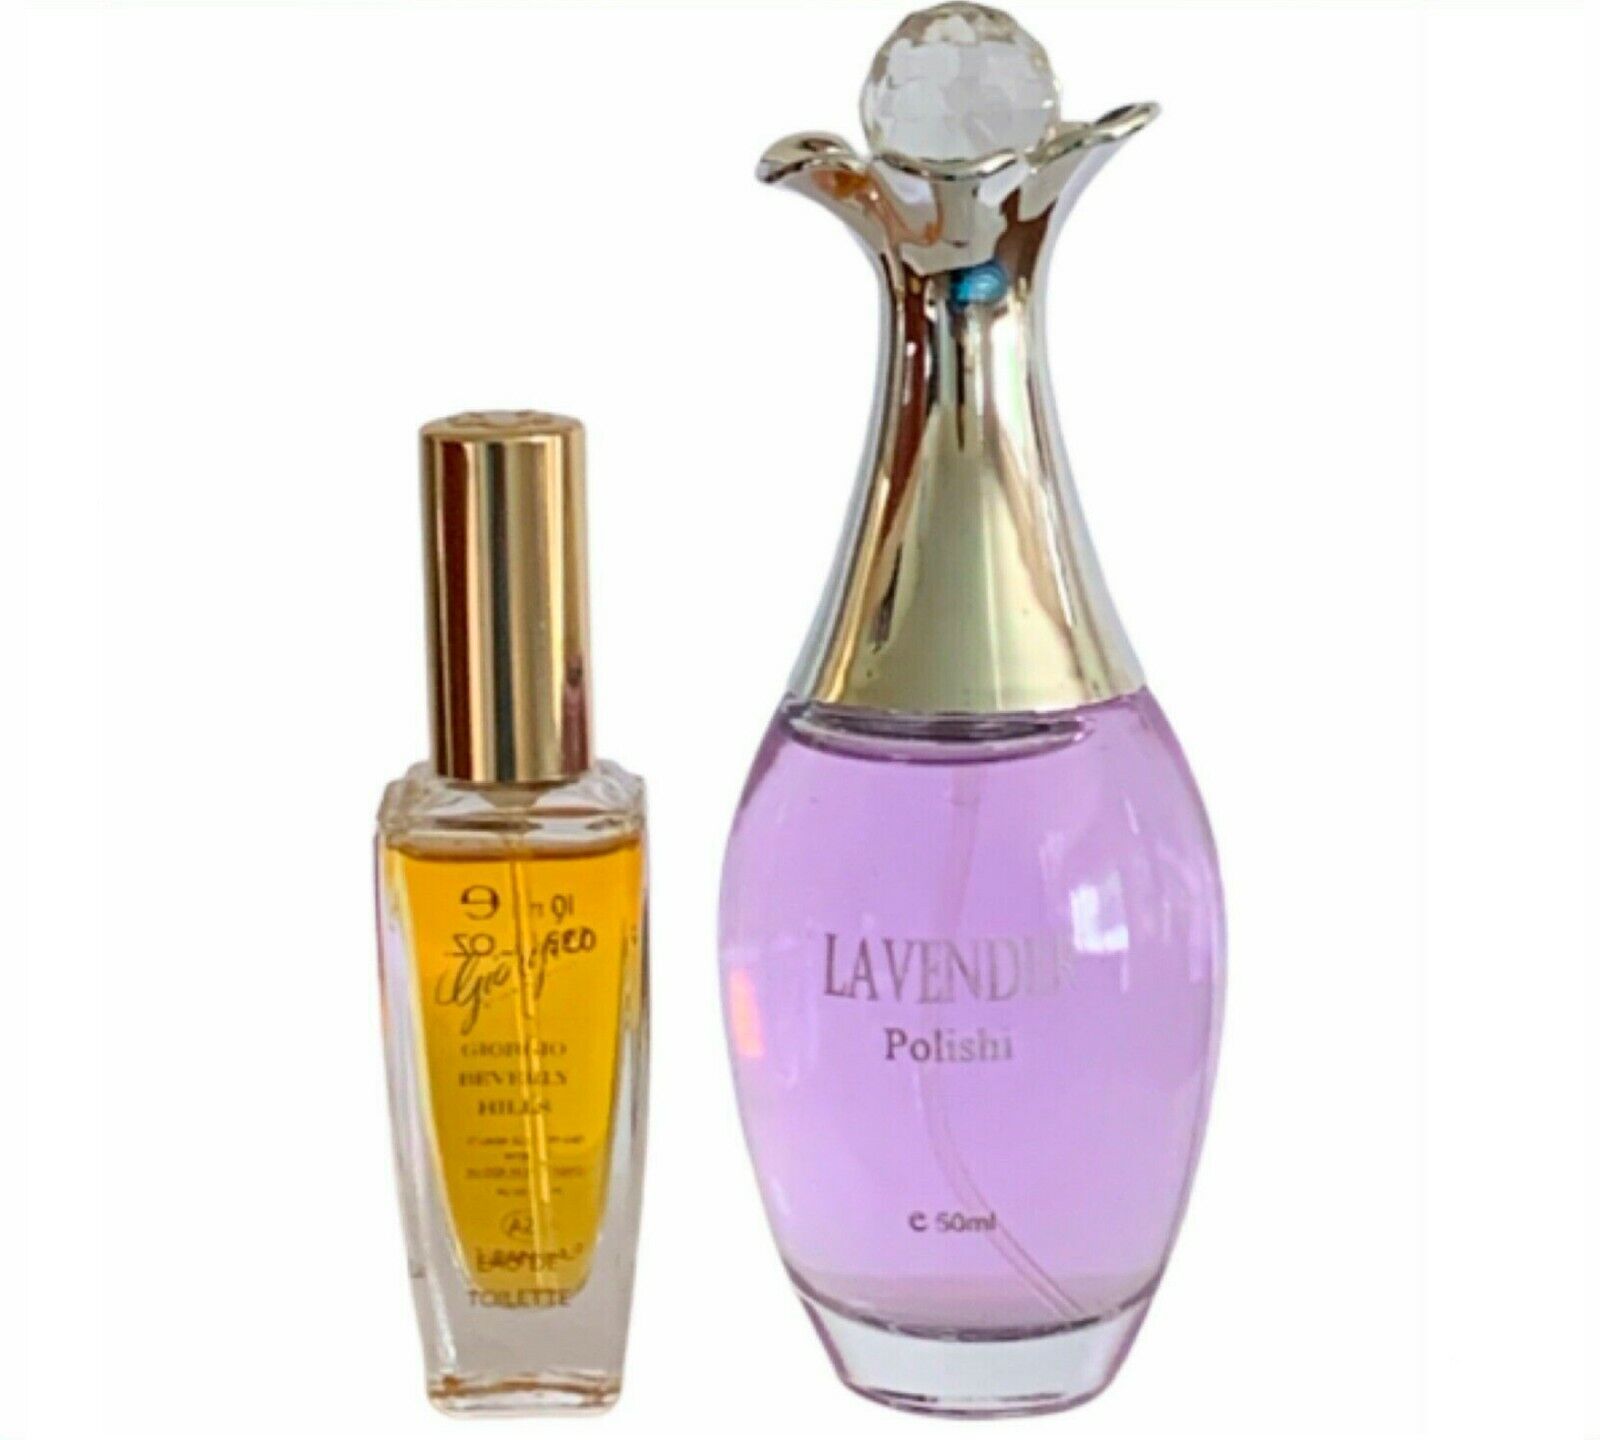 Lavender Perfume for Women 1.7 oz 50ml Eau De Parfum, Giorgio 0.33 oz / 10 ml